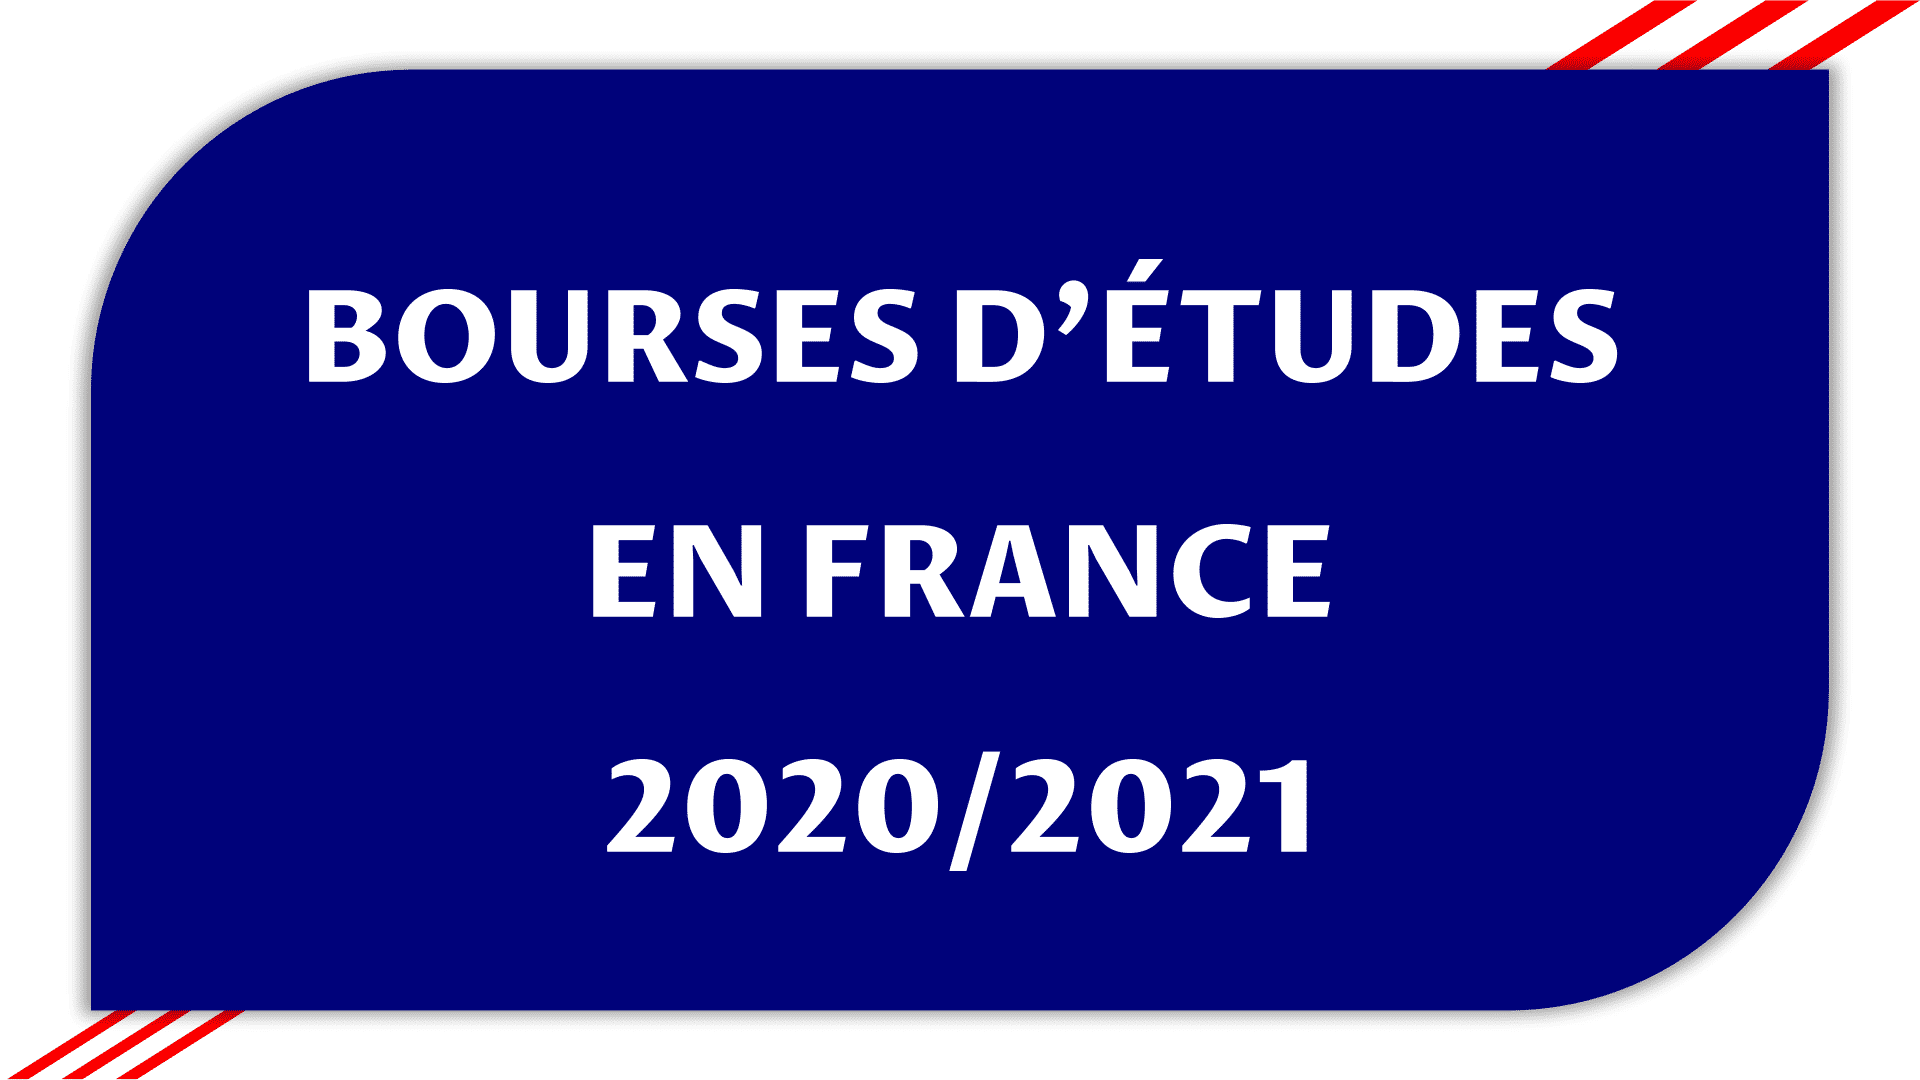 Bourses d'études en France 2020/2021 pour étudiant 